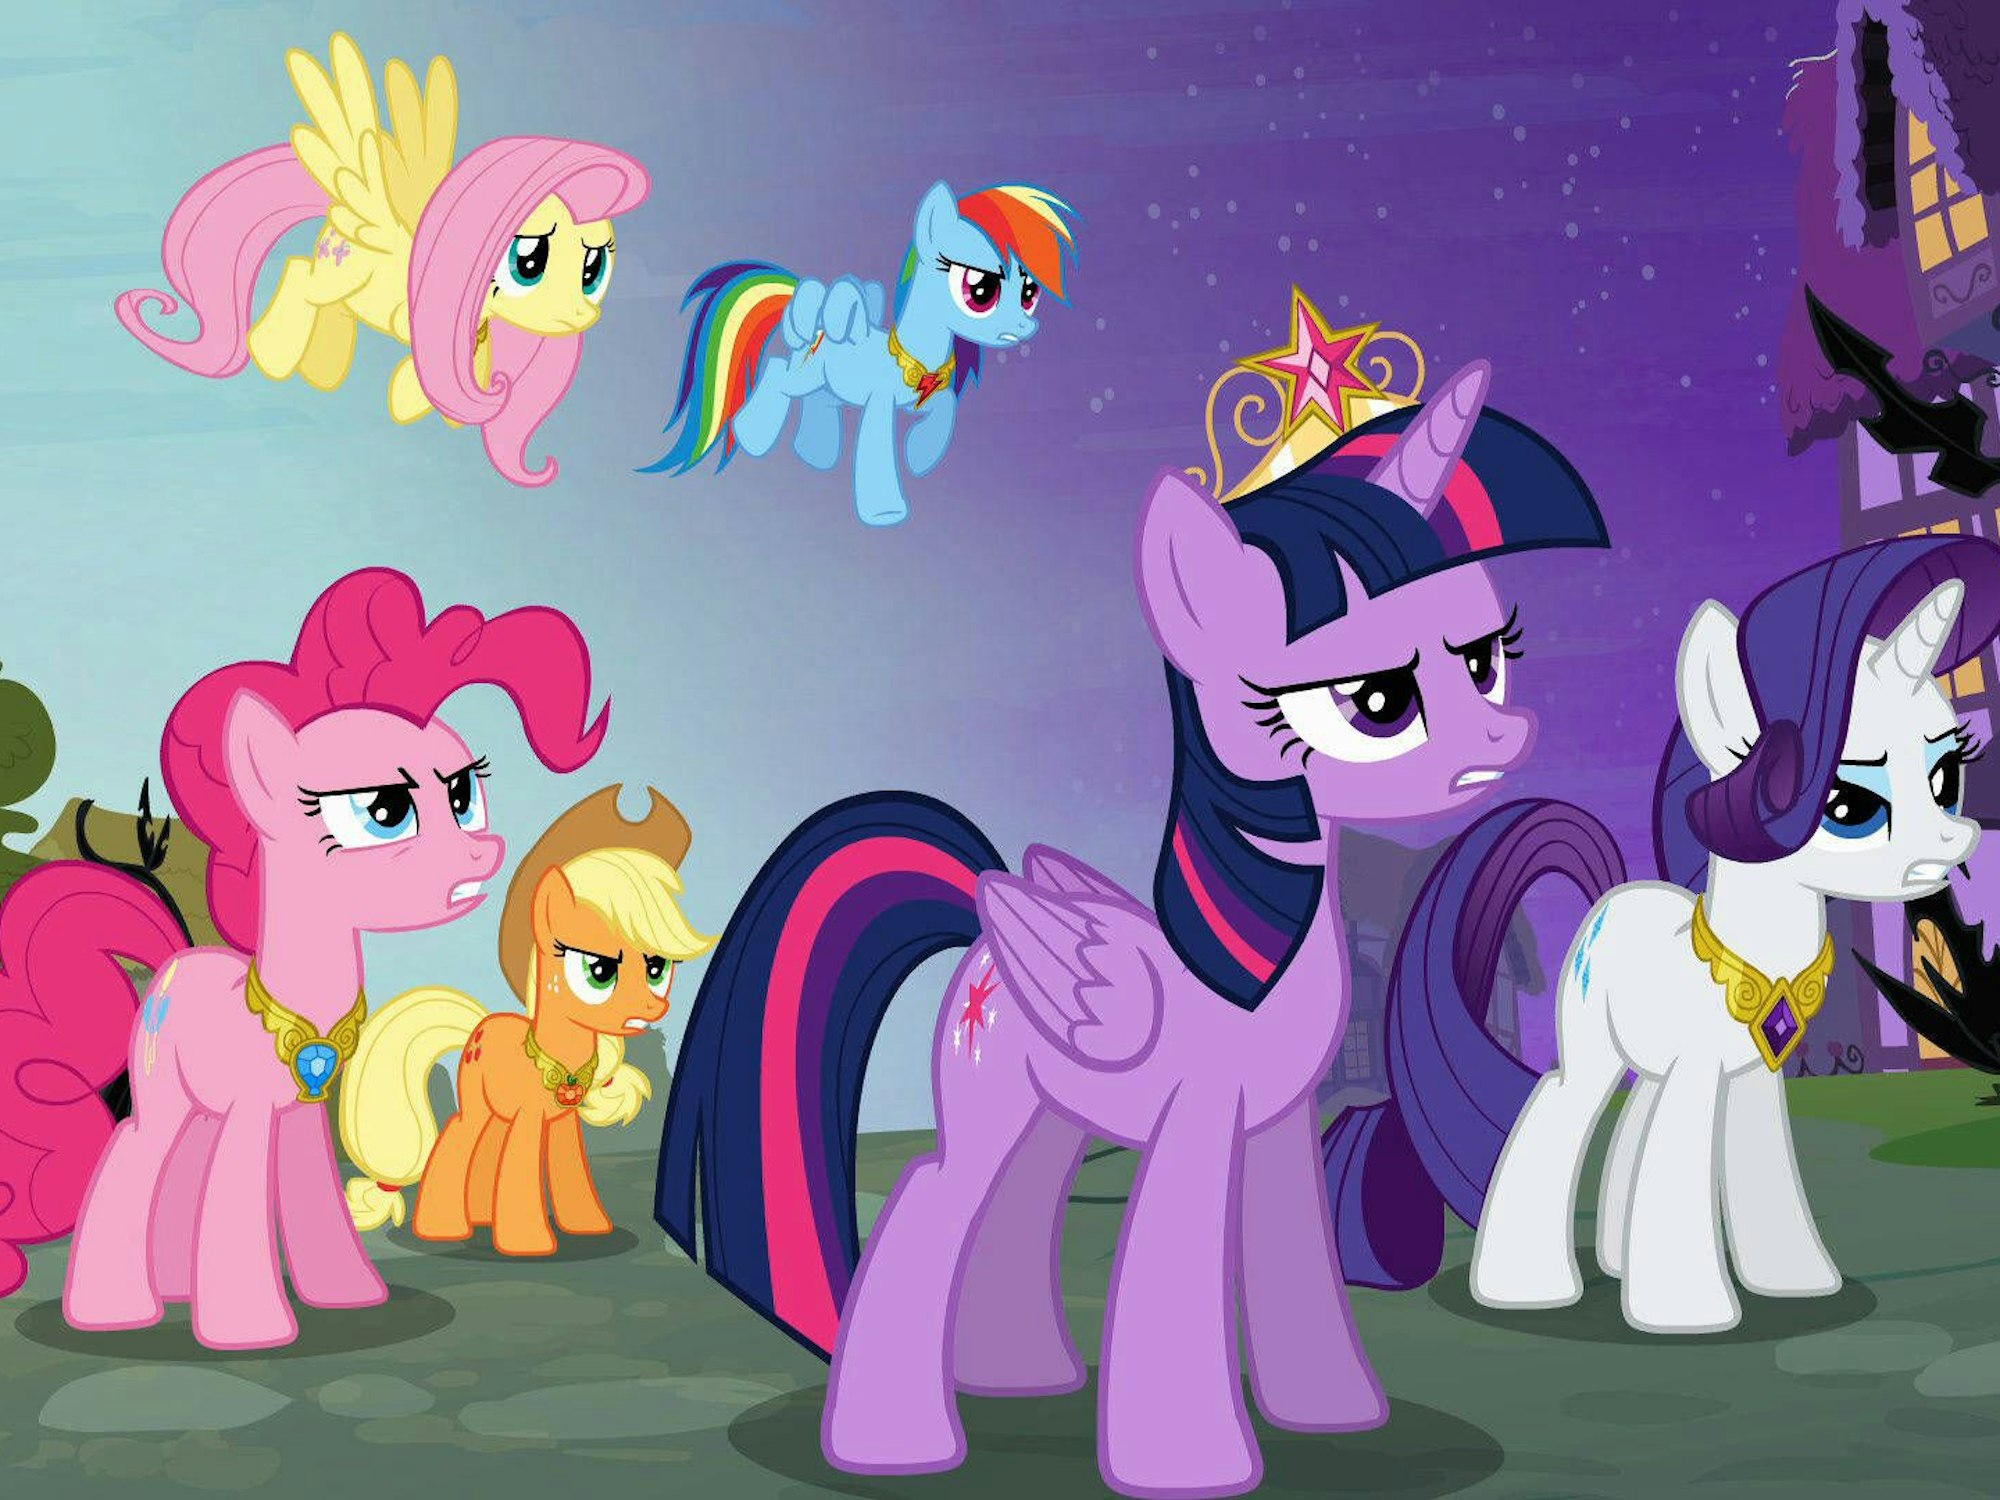 Ausschnitt aus der Serie „My little Pony“. Von links: Fluttershy, Rainbow Dash, Auf dem Boden: Pinkamena Diane Pinkie Pie, Applejack, Twilight Sparkle, Rarity, Princess Twilight Sparkle, hier aus Staffel 4, Episode 401 von November 2013.